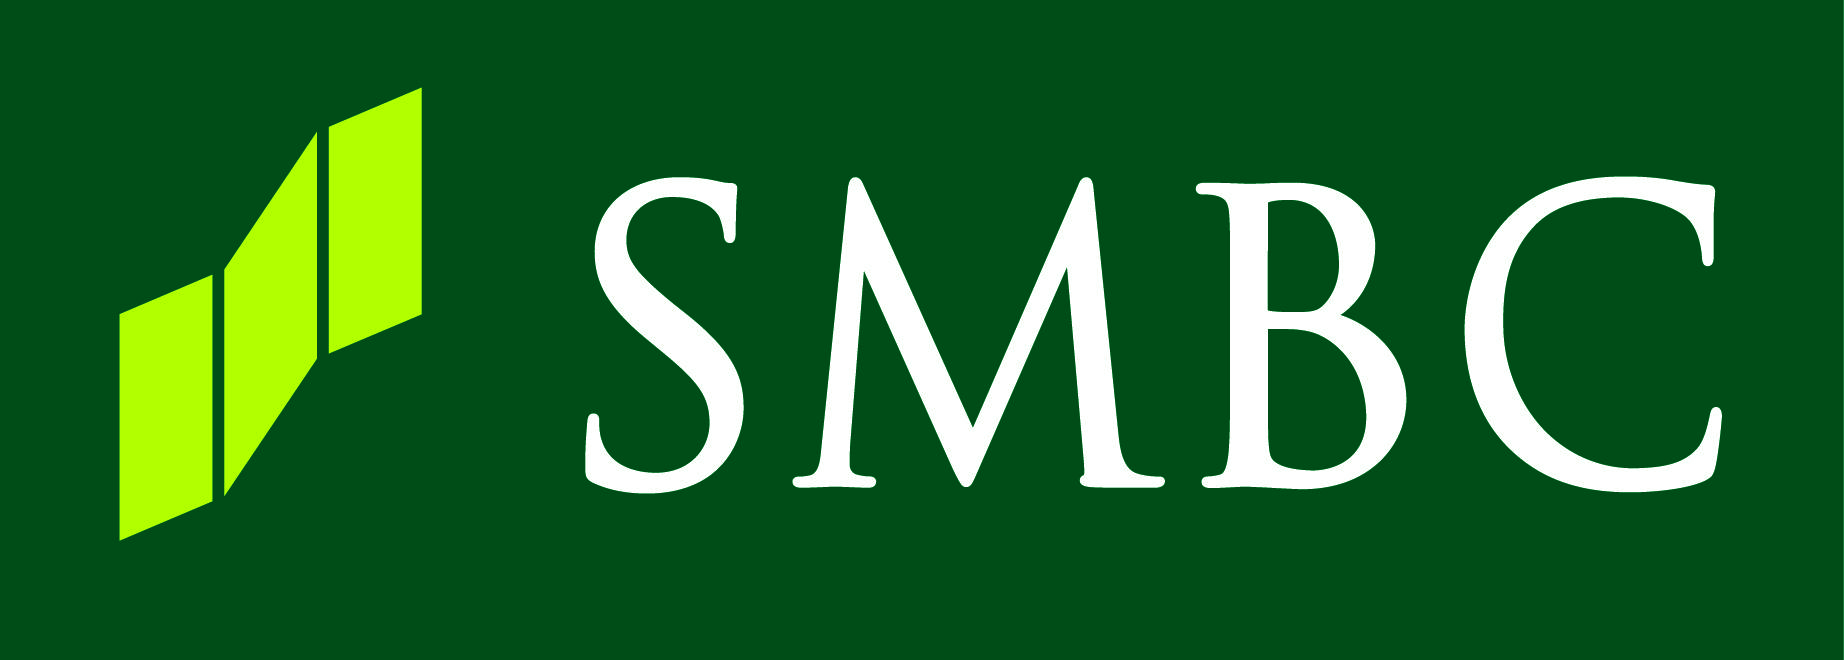 SMBC Logo - Smbc Logo Only 1 CMYK Oil & Gas Conference